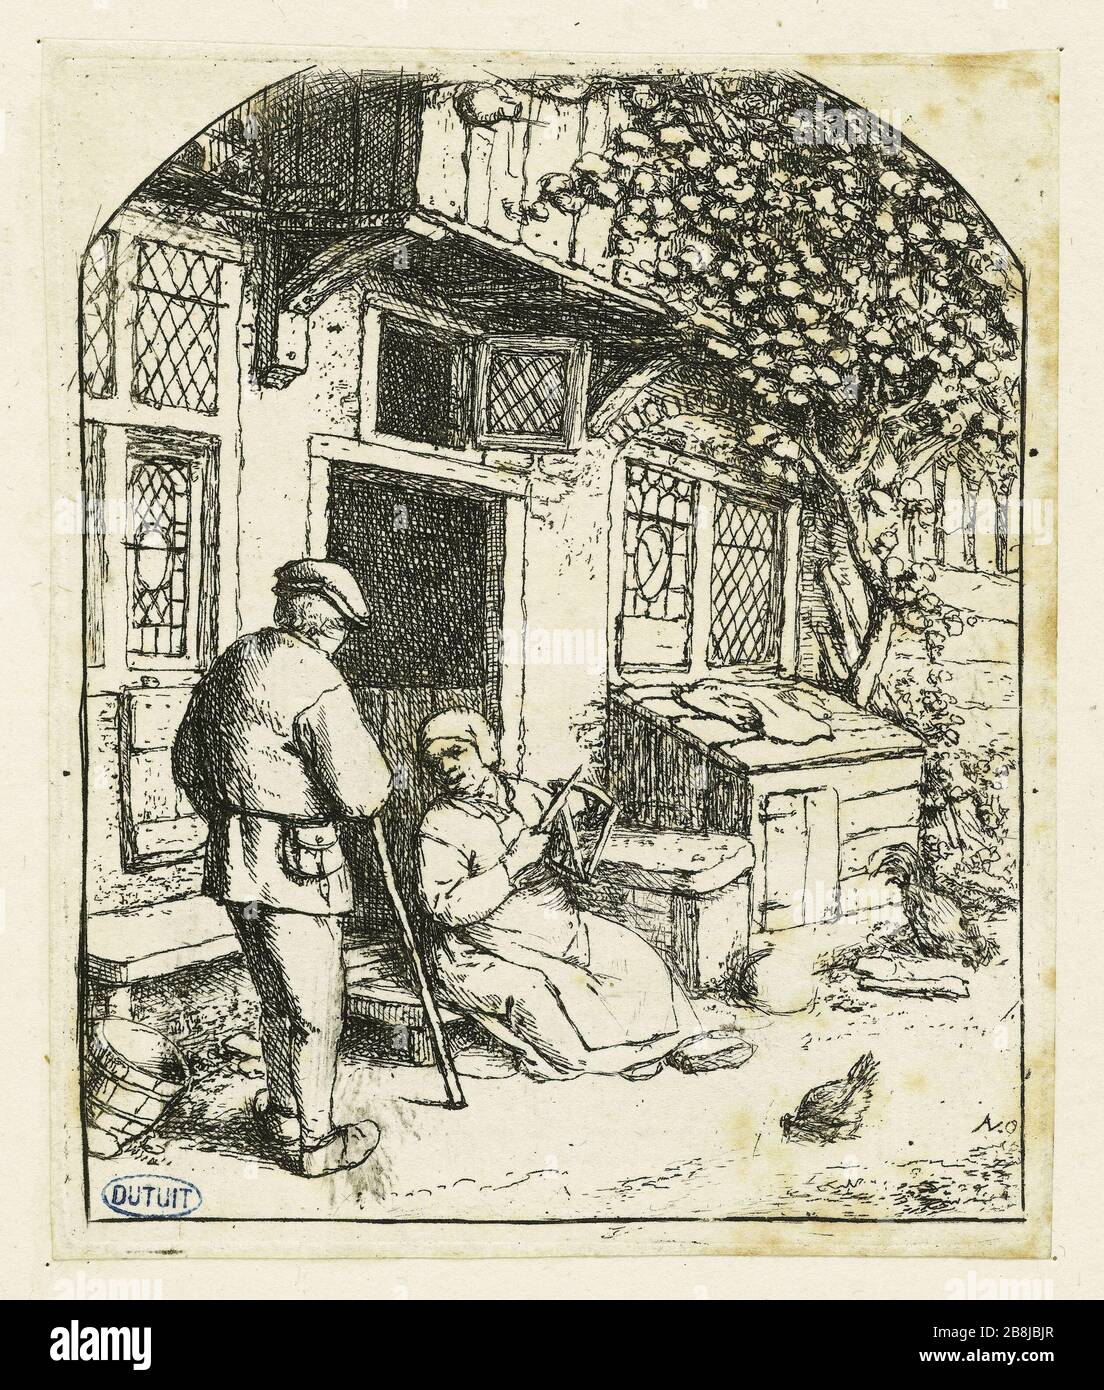 La dévideuse (Bartsch 25) Adriaen Van Ostade (1610-1685). La dévideuse (Bartsch 25). Eau-forte, vers 1668 Foto Stock